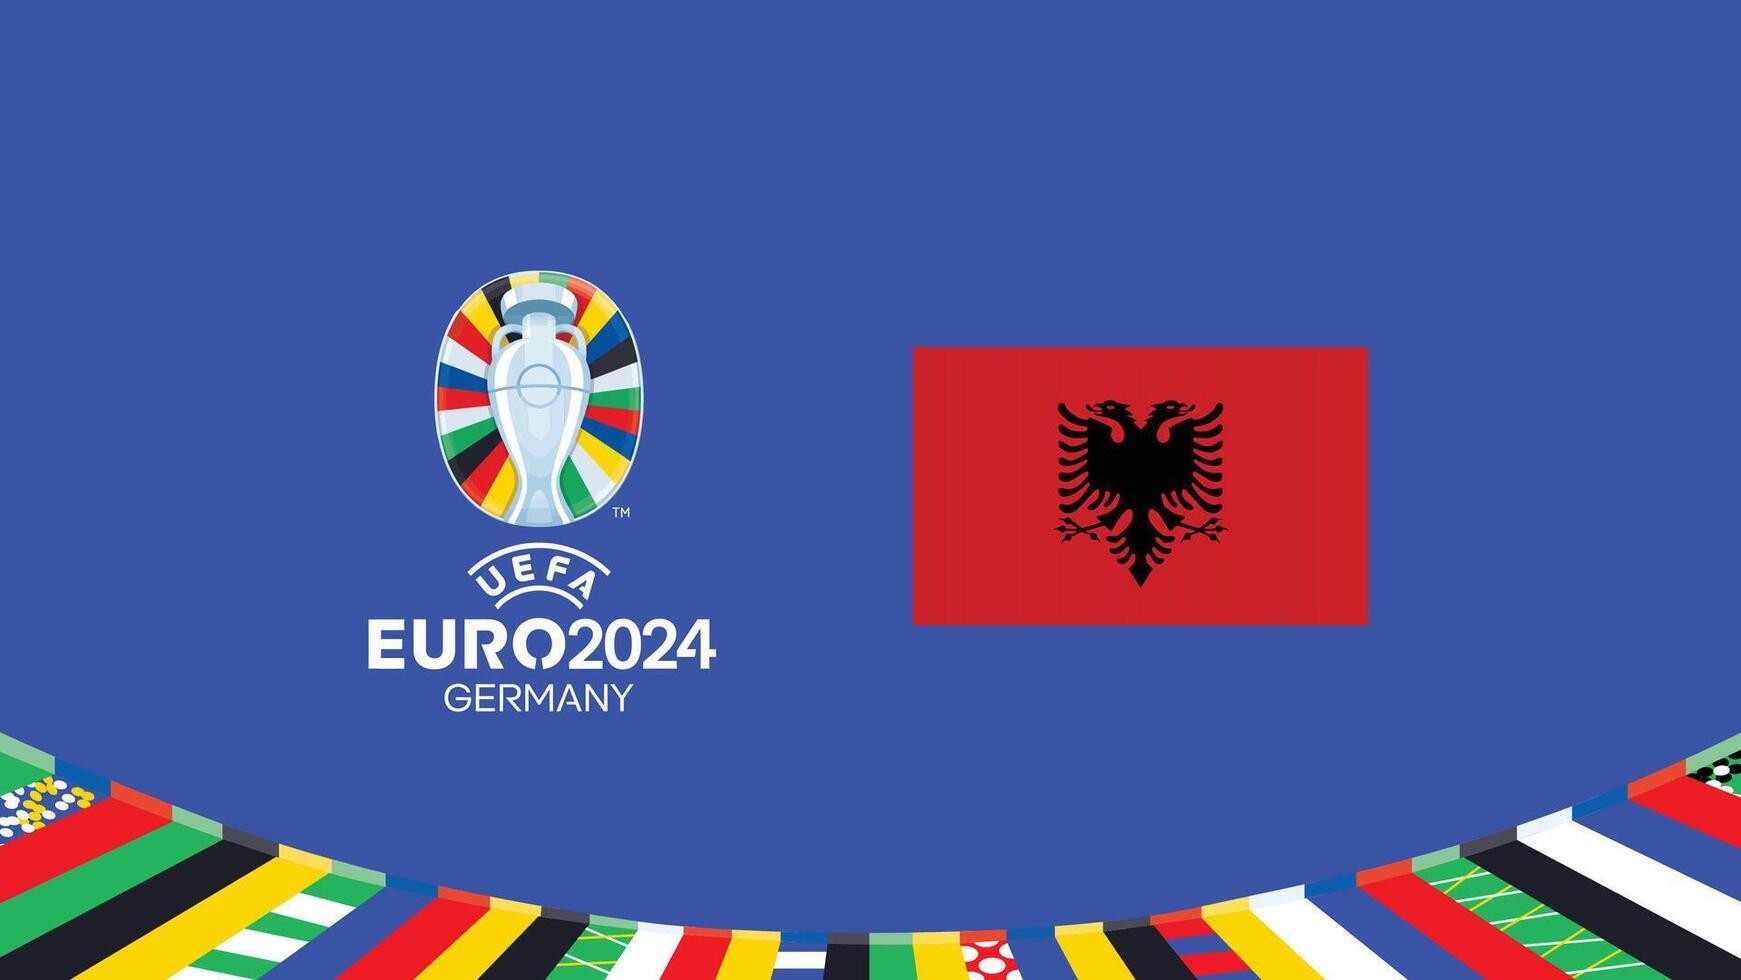 Euro 2024 Albanien Flagge Emblem Teams Design mit offiziell Symbol Logo abstrakt Länder europäisch Fußball Illustration vektor